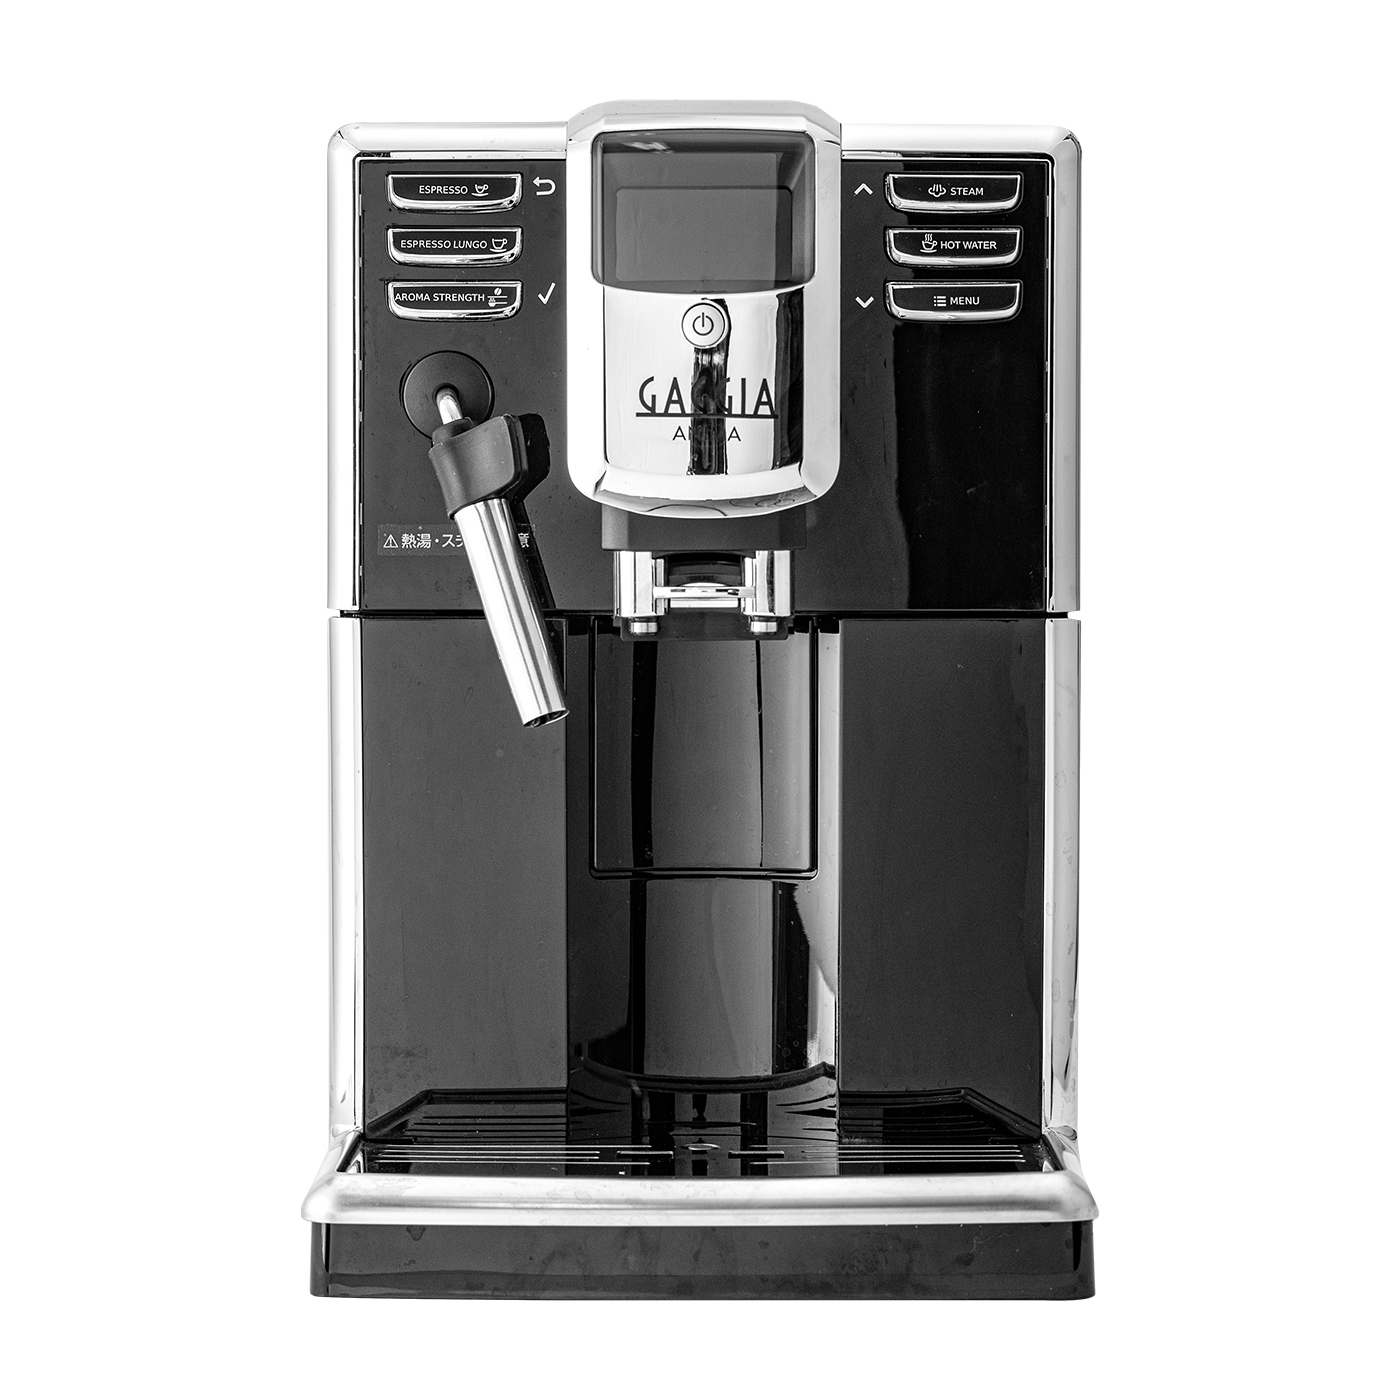 ネスプレッソ クレアティスタ・プラス J520 - コーヒーメーカー